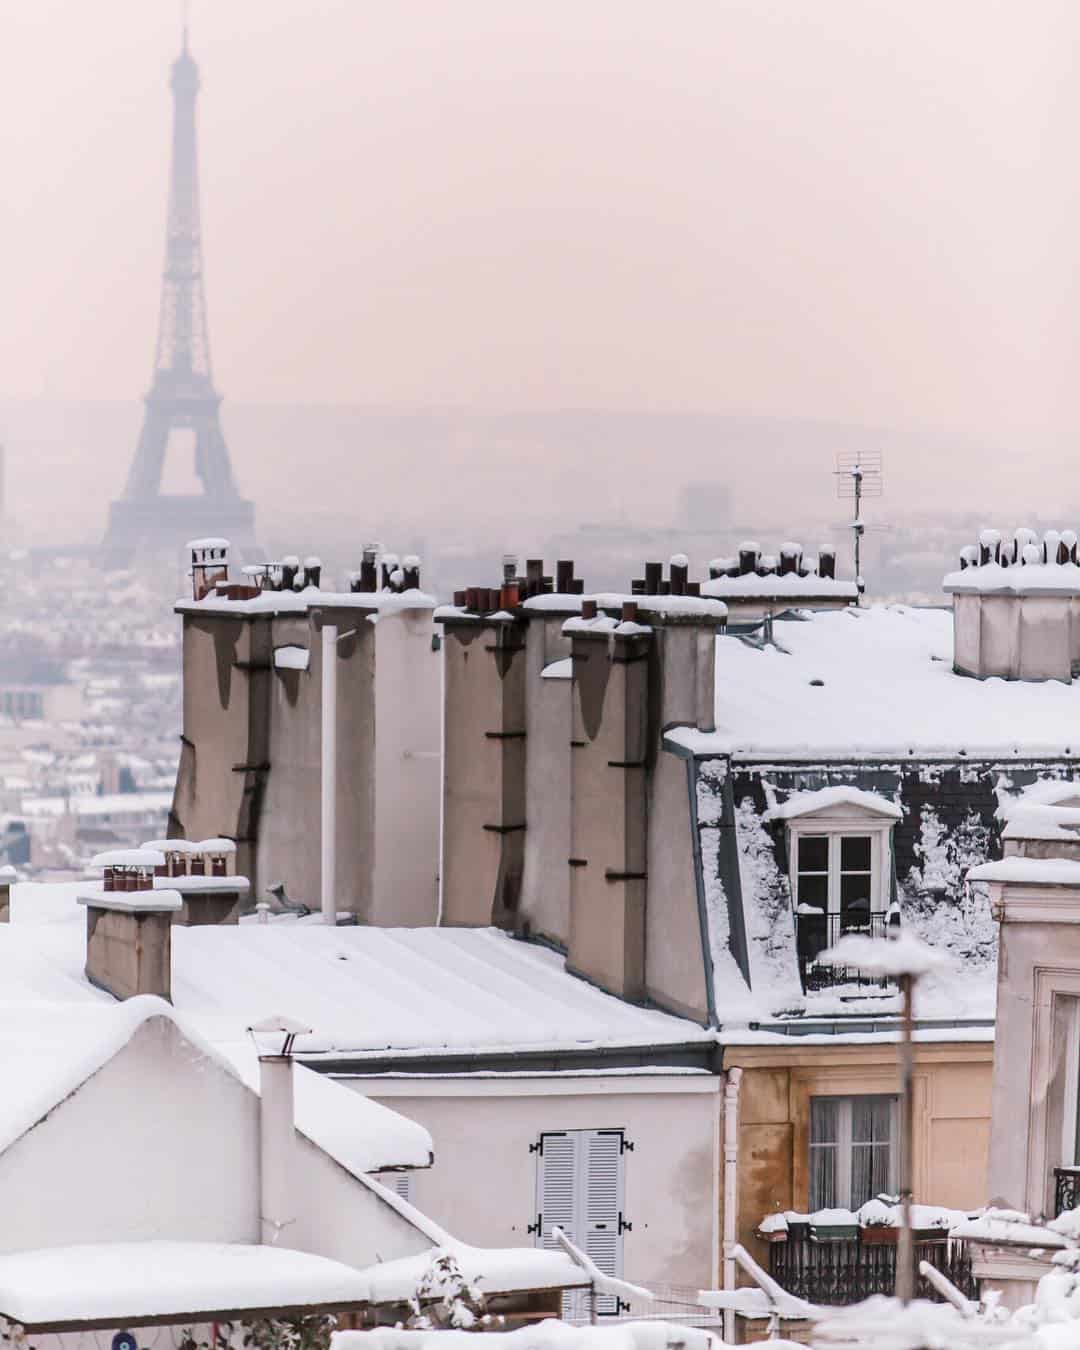 Paris During the Winter